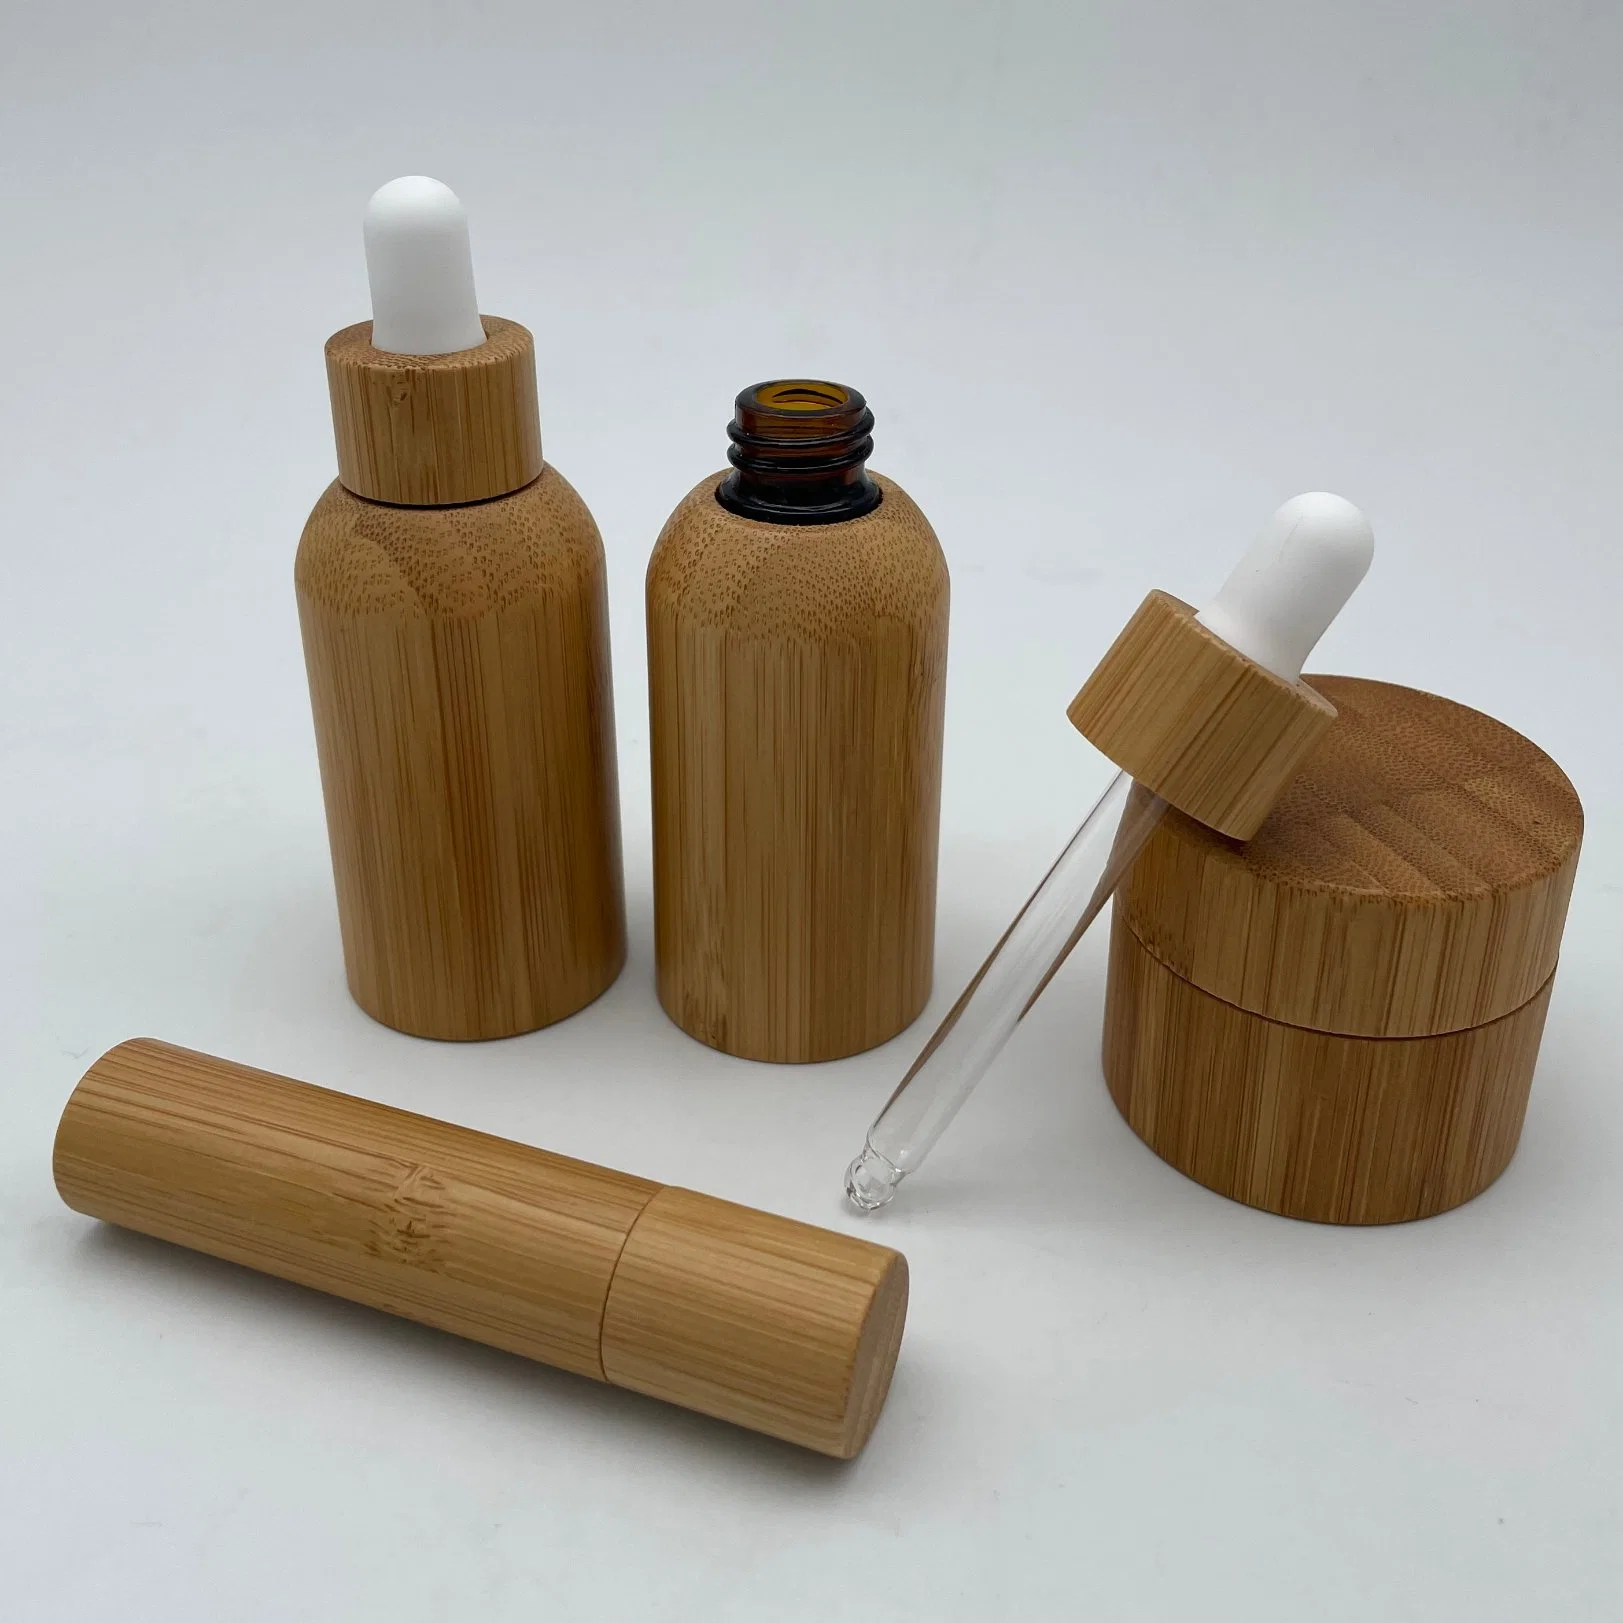 Precio de Fábrica de Venta caliente reactivo de bambú de la botella de cristal para el cuidado de piel